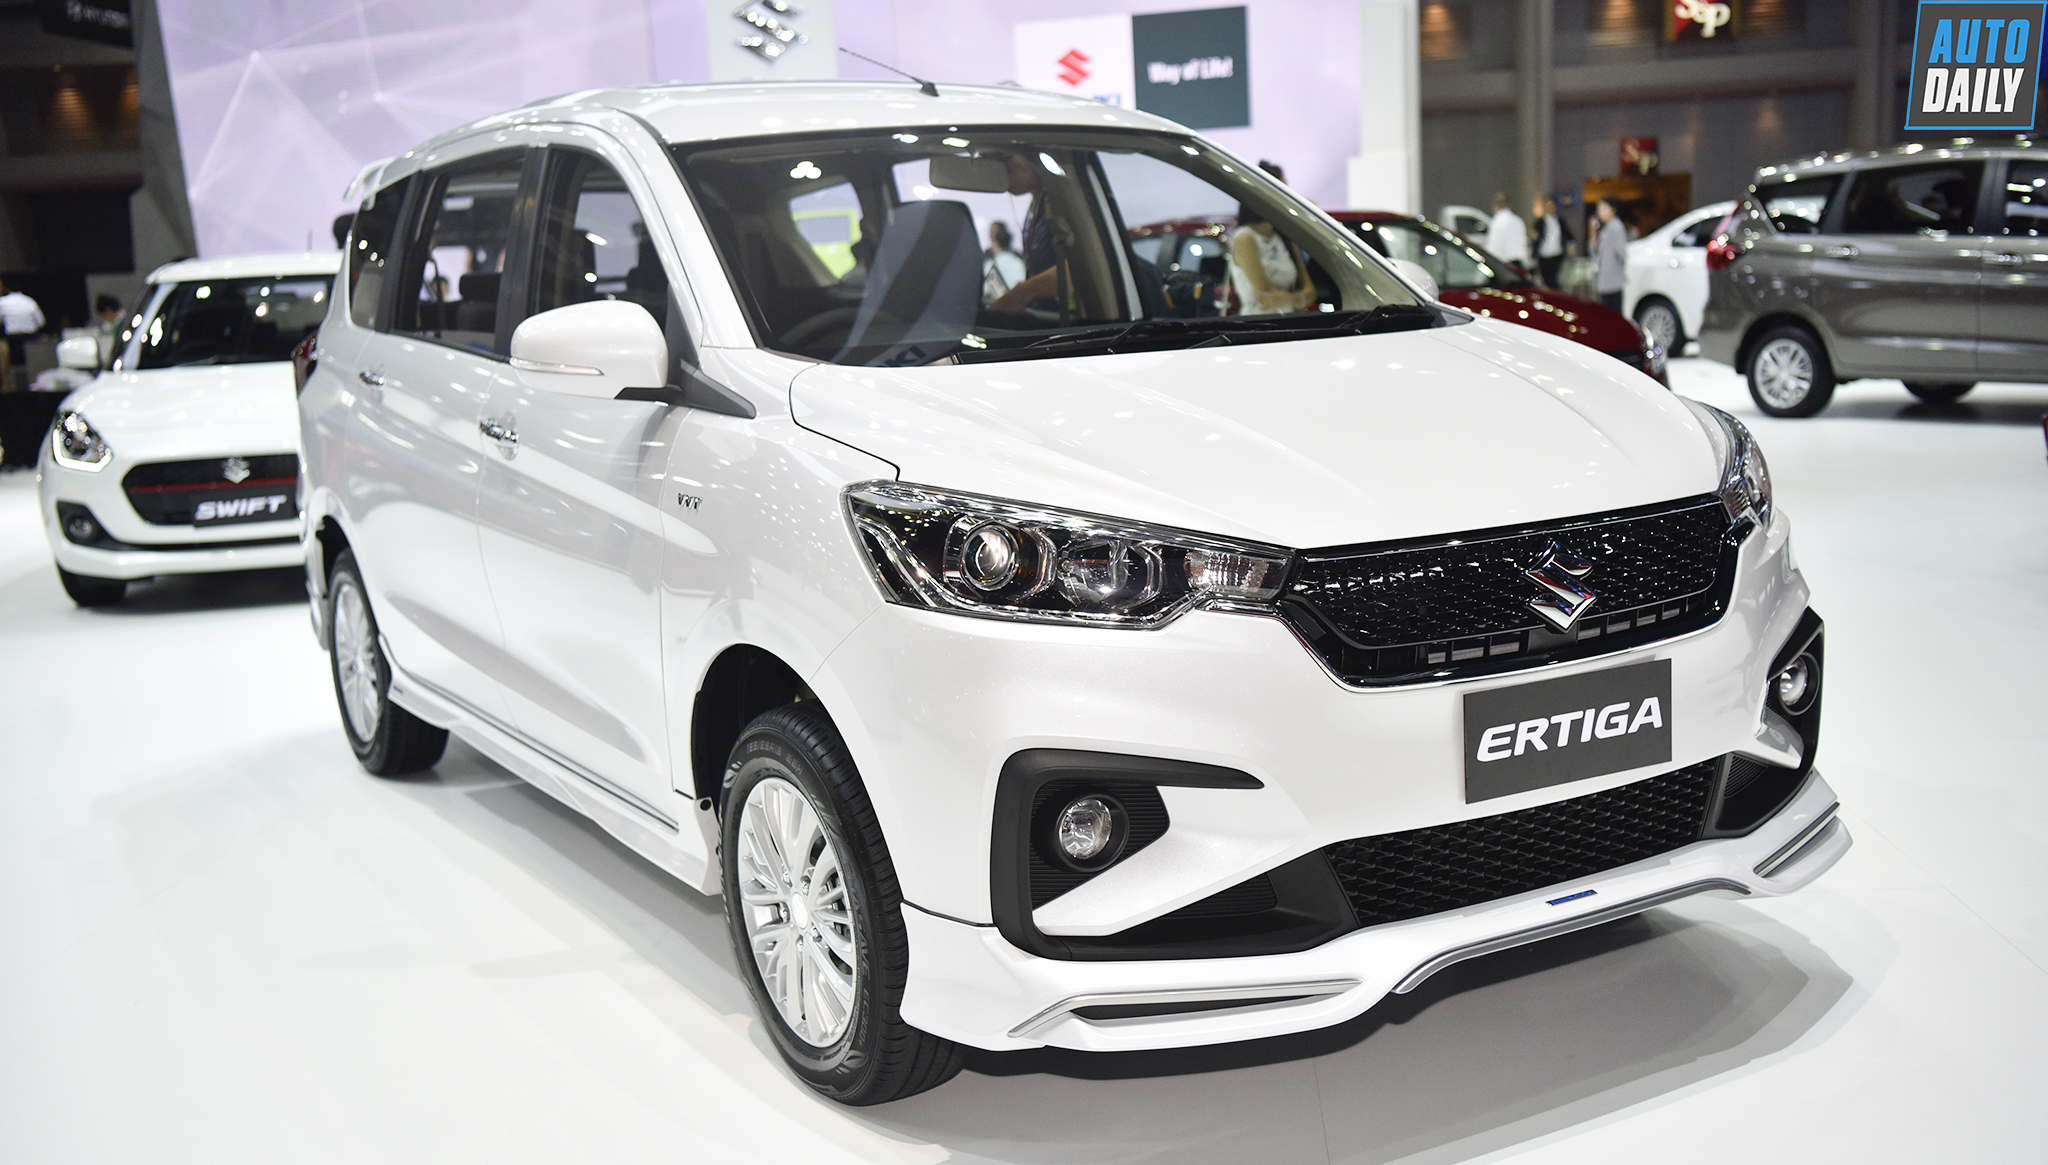 Suzuki Ertiga mới giá từ 478 triệu đồng tại Thái Lan, hứa hẹn về Việt Nam trong quý II/2019